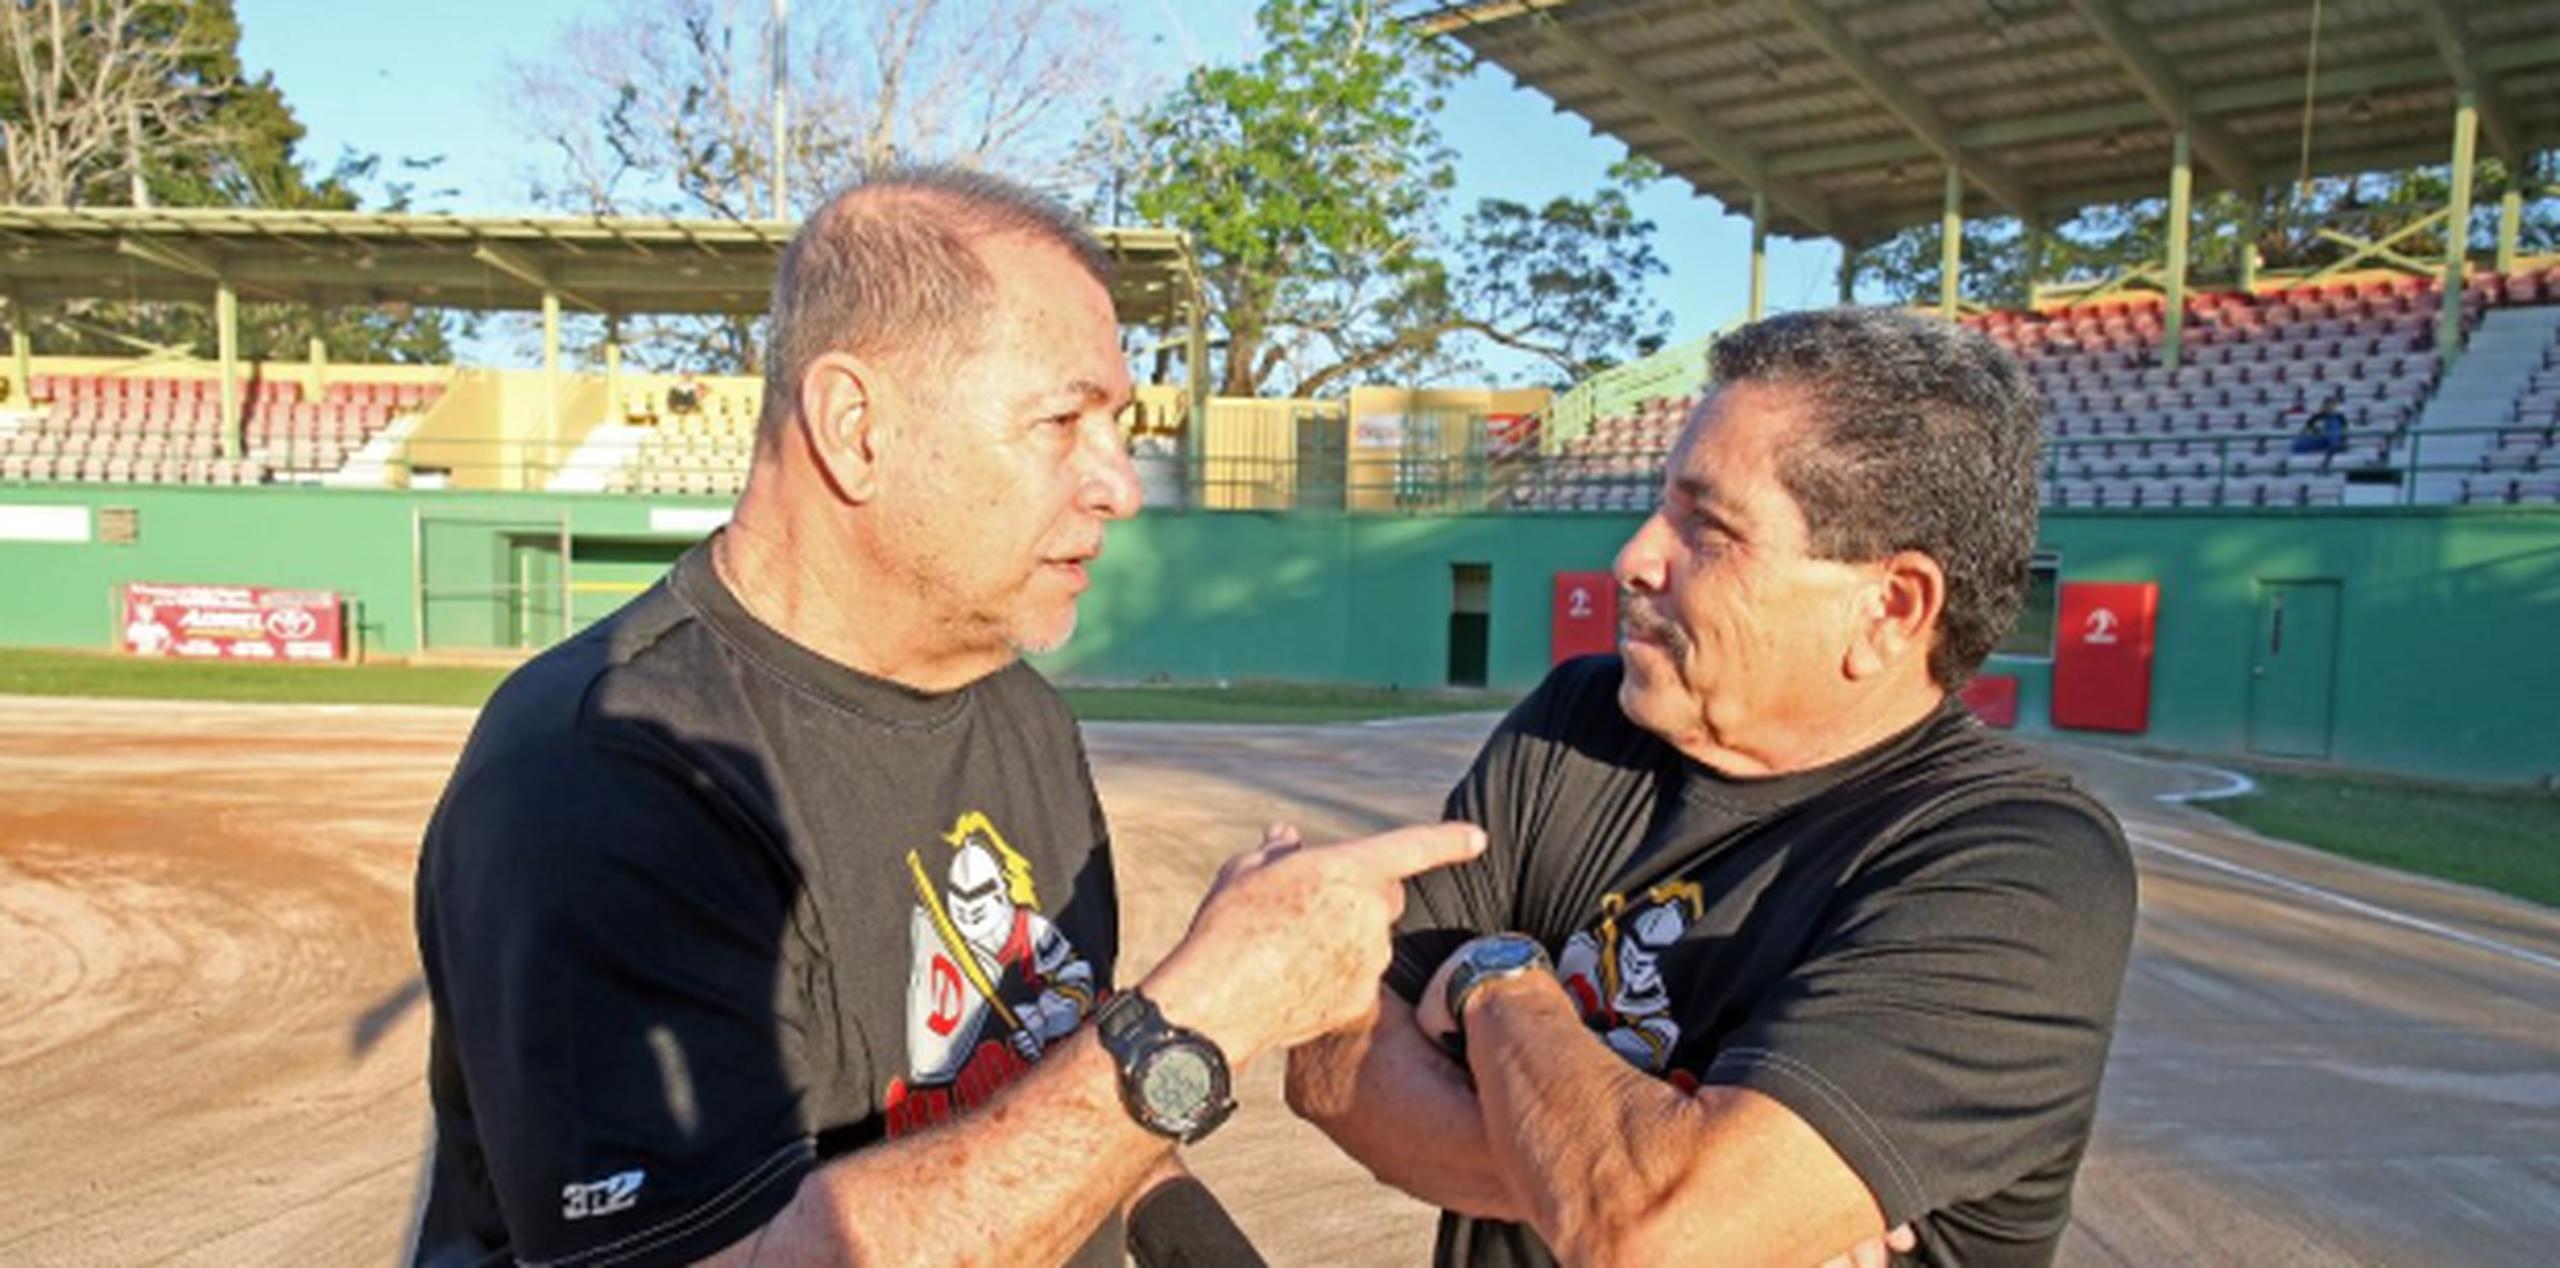 La amistad de Rodríguez y Oliveras es un lazo indestructible que lleva más de 40 años fortaleciéndose hasta convertirse en hermanos. (david.villafañe@gfrmedia.com)